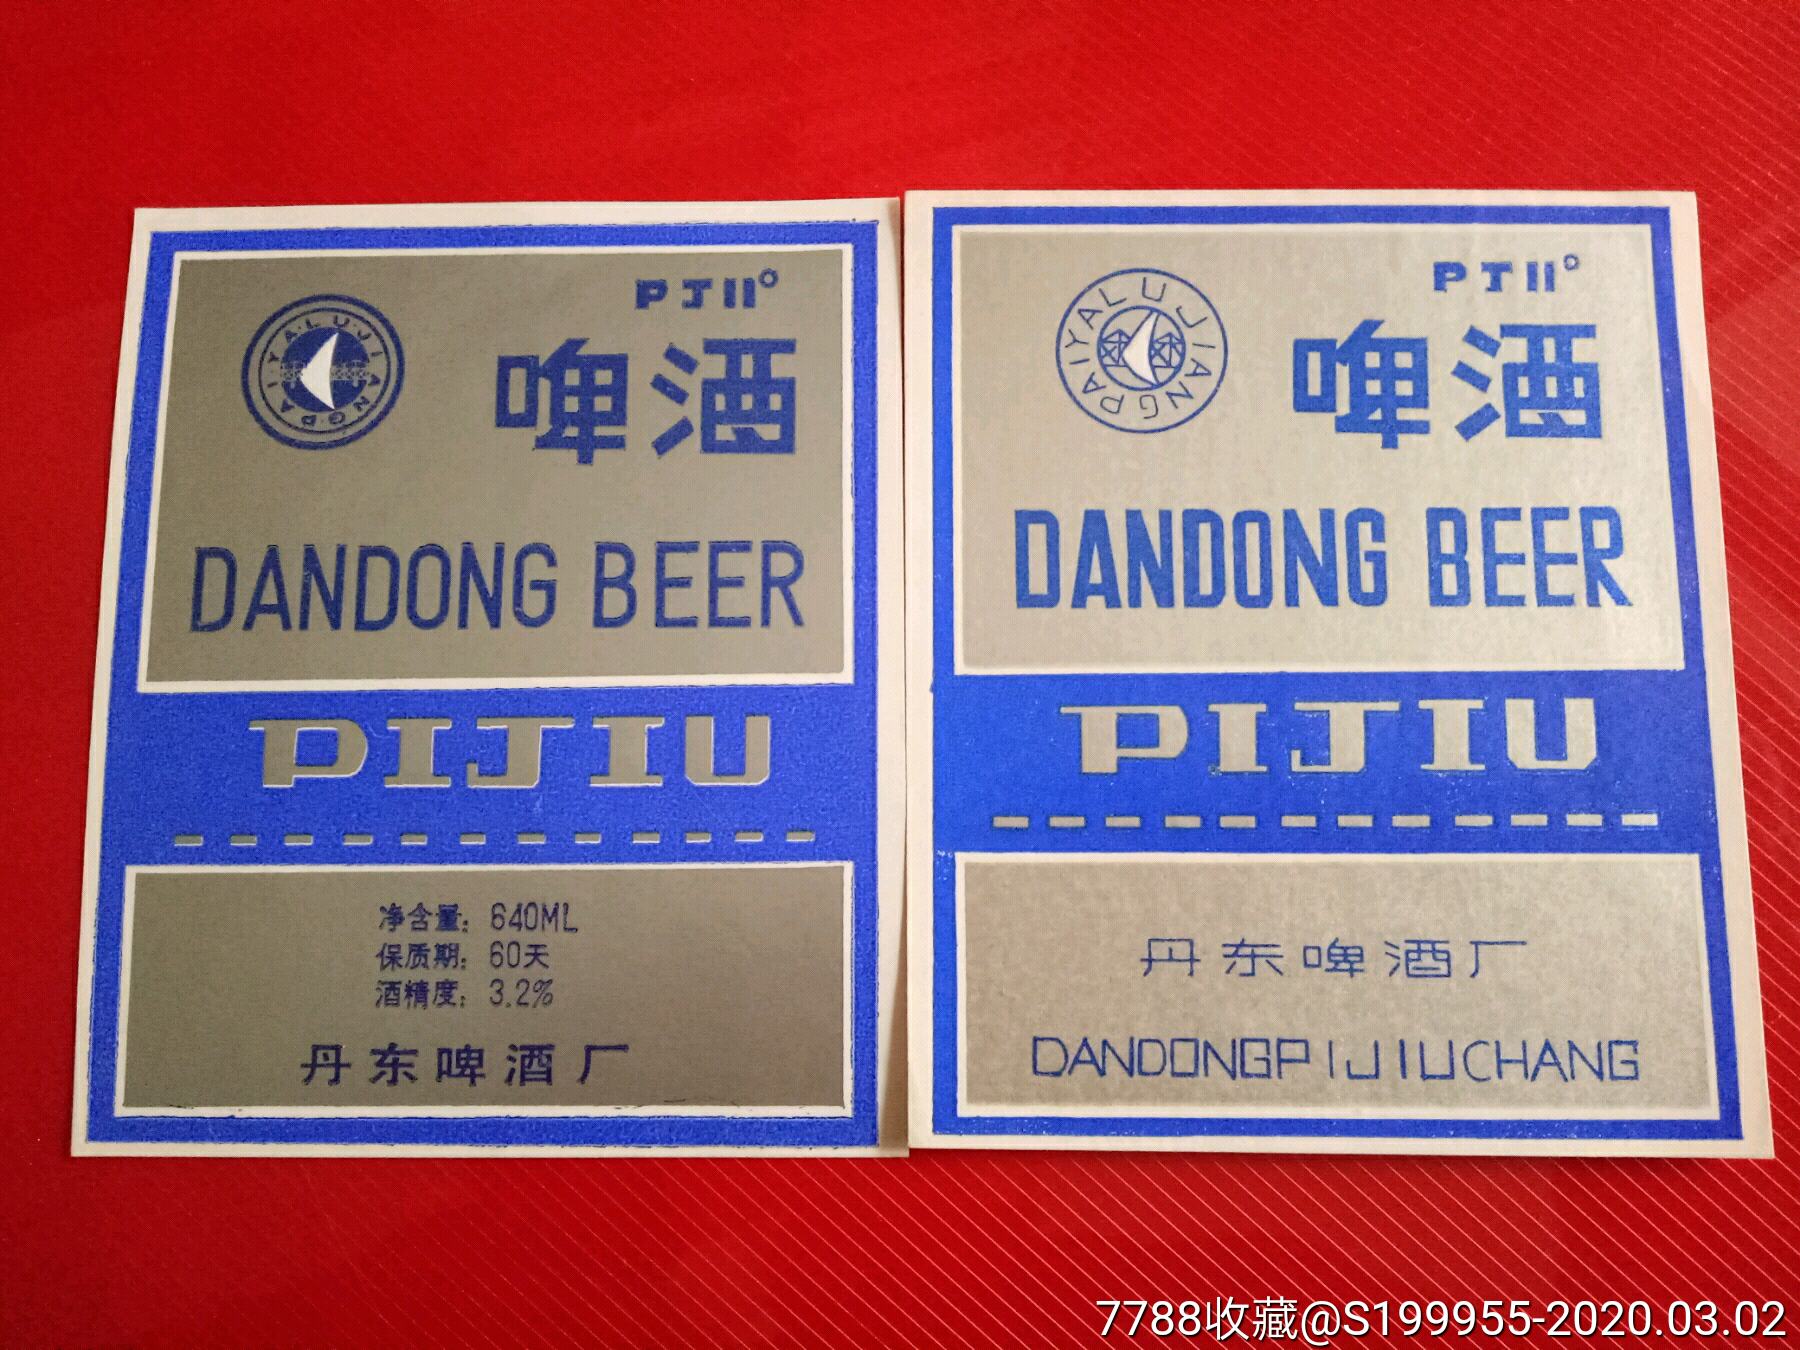 丹东啤酒(左)